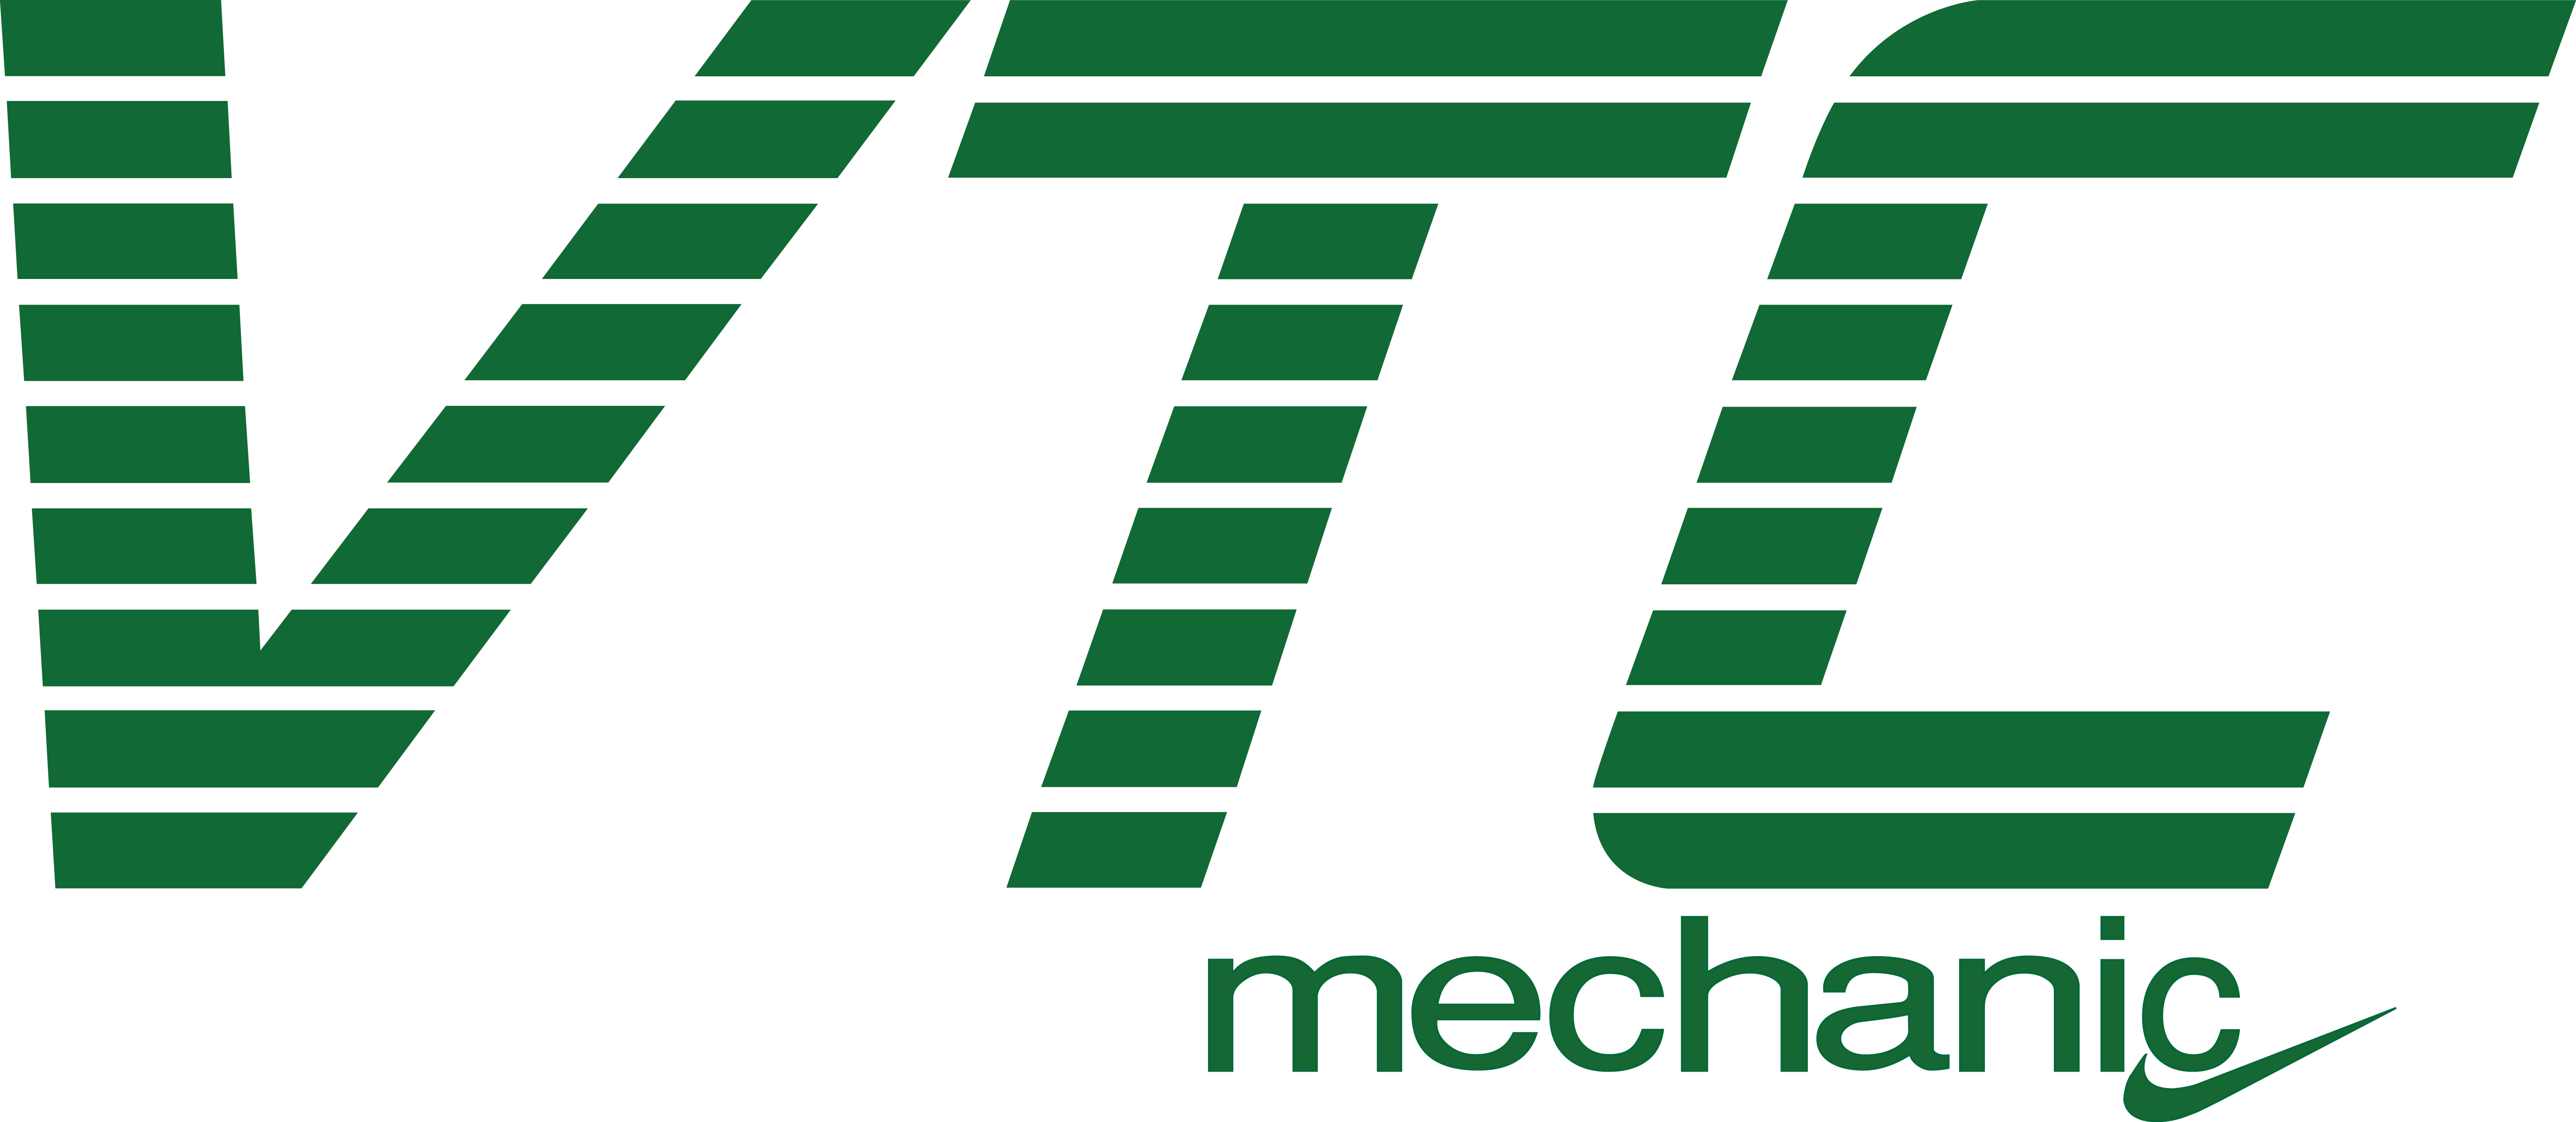 VTC MECHANIC SYSTEM CO., LTD